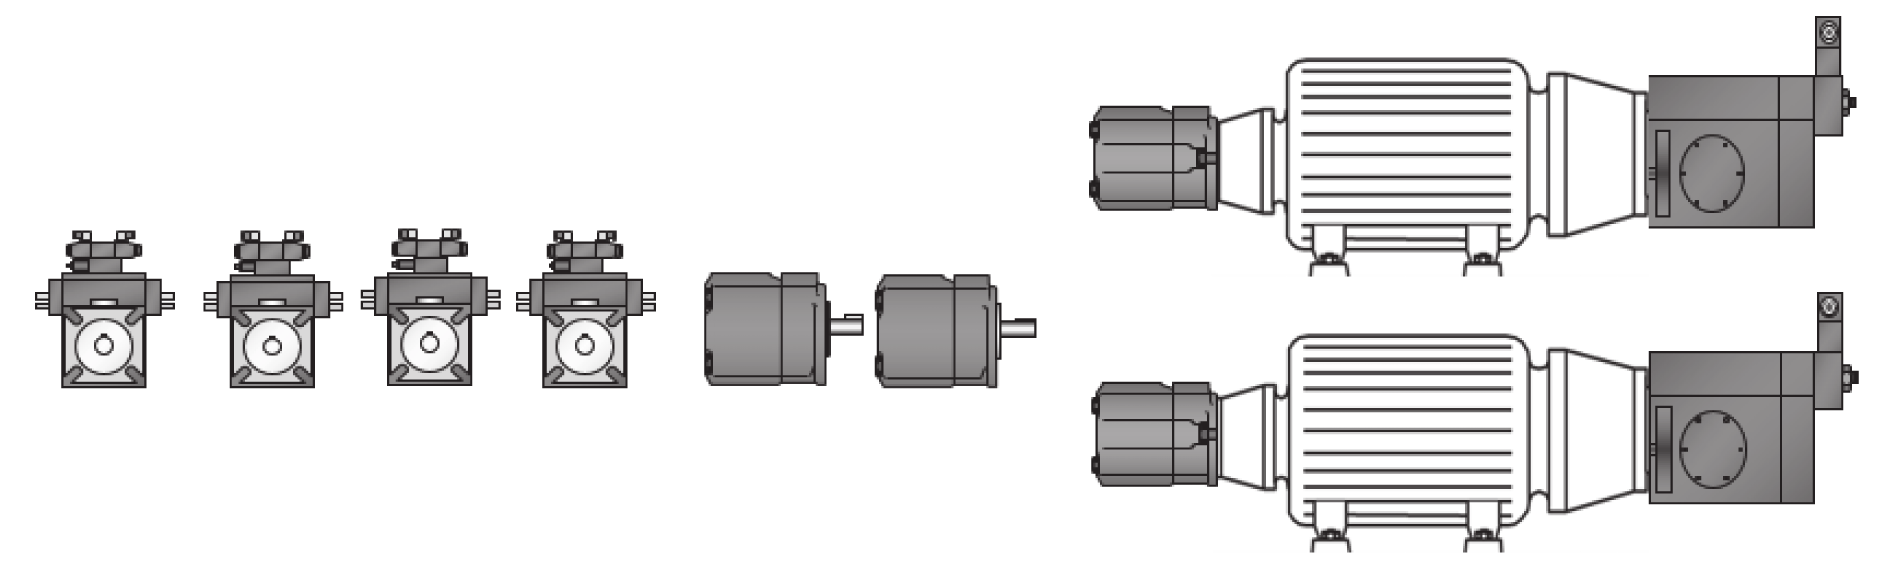 Pompa-motor yerleşimi açısından diğer bir konuda, pompa-motor grubunun ve bunun yanında kontrol bloklarının nasıl ve hangi konumda yerleştirileceği konusudur.